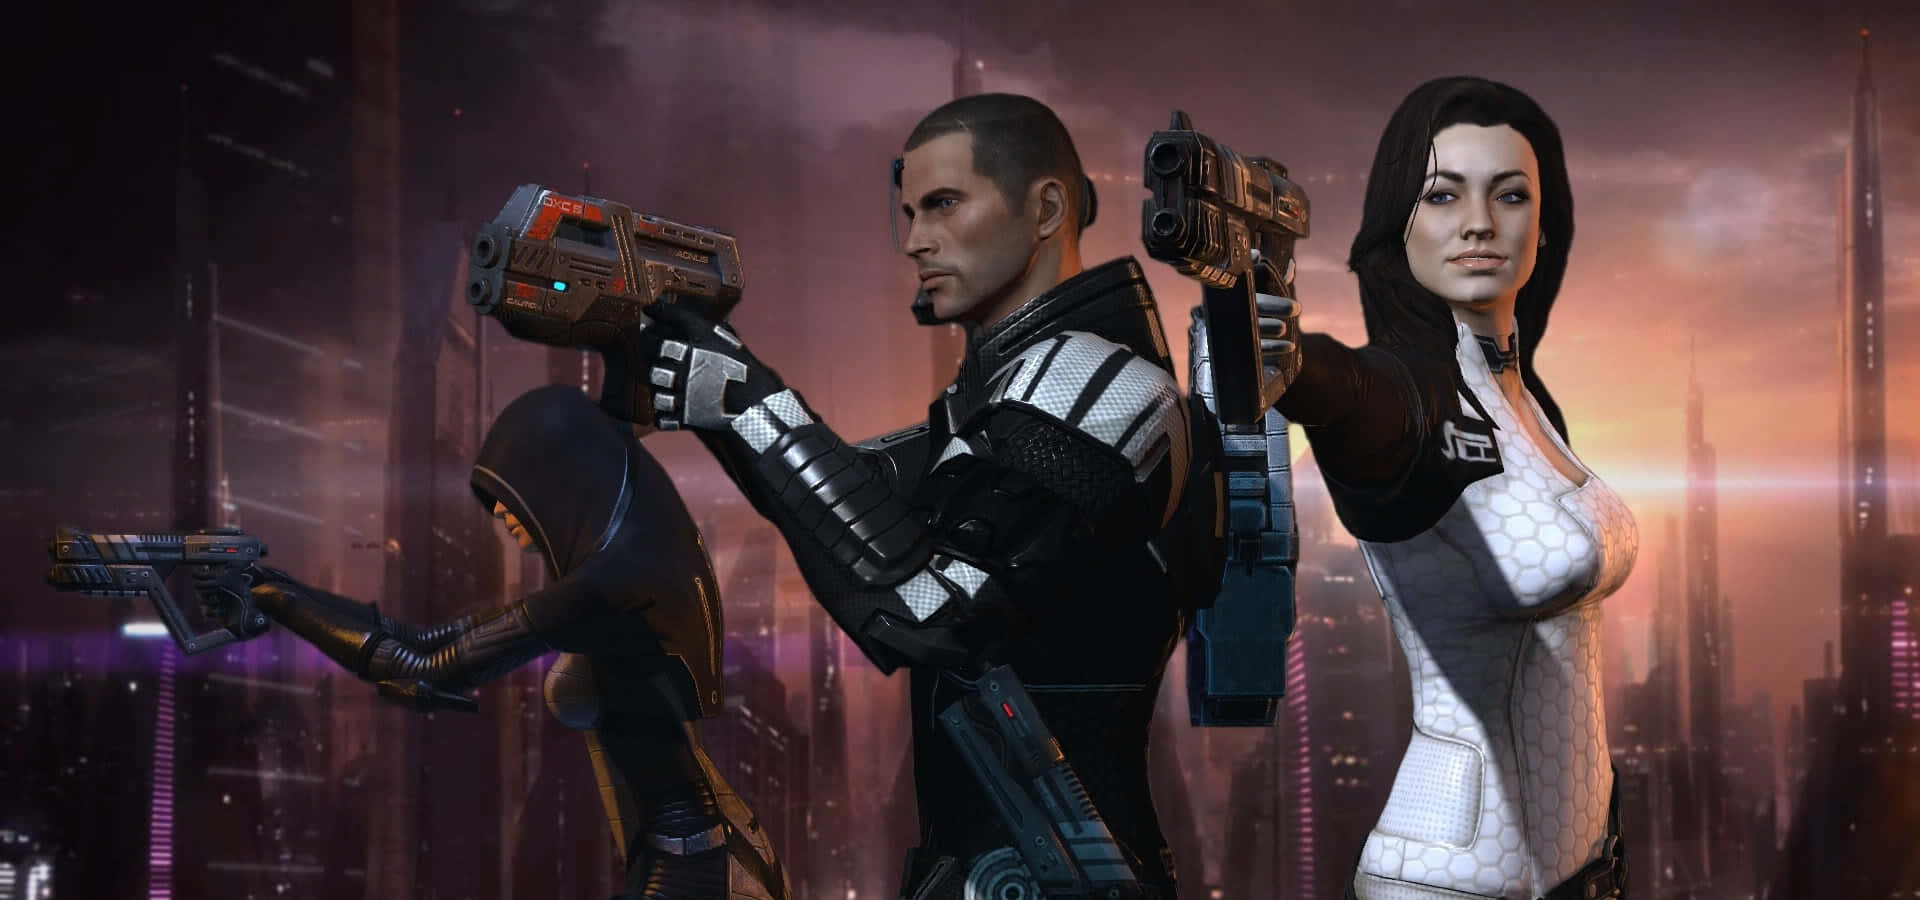 Unequipo De Personajes De Mass Effect Listos Para La Acción. Fondo de pantalla